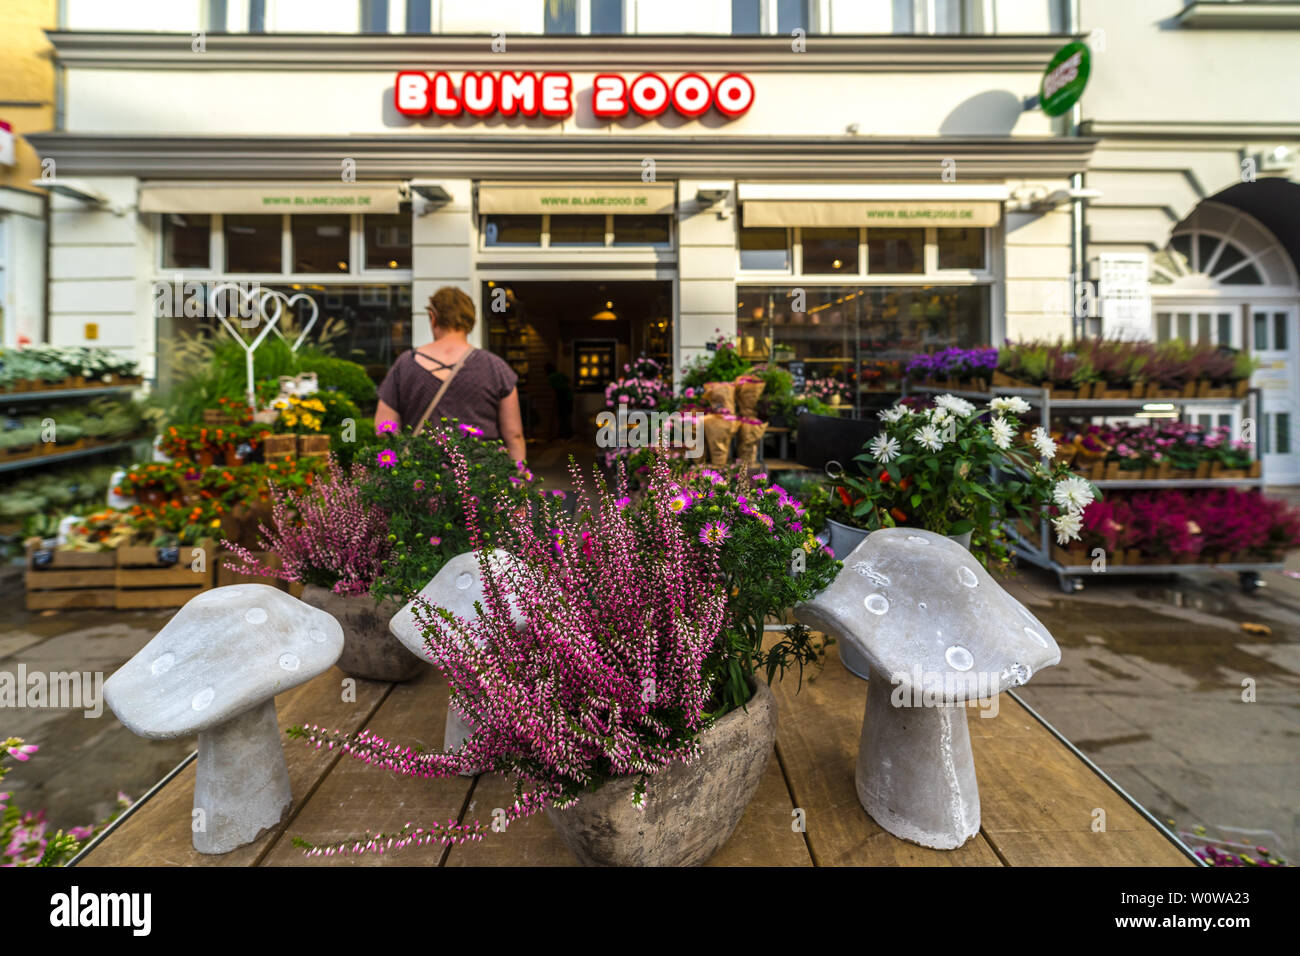 BERLIN - September 09, 2018: Straßen des historischen Zentrums von Altstadt  Spandau. Ein beliebtes Kette von Flower shops Blume 2000 Stockfotografie -  Alamy